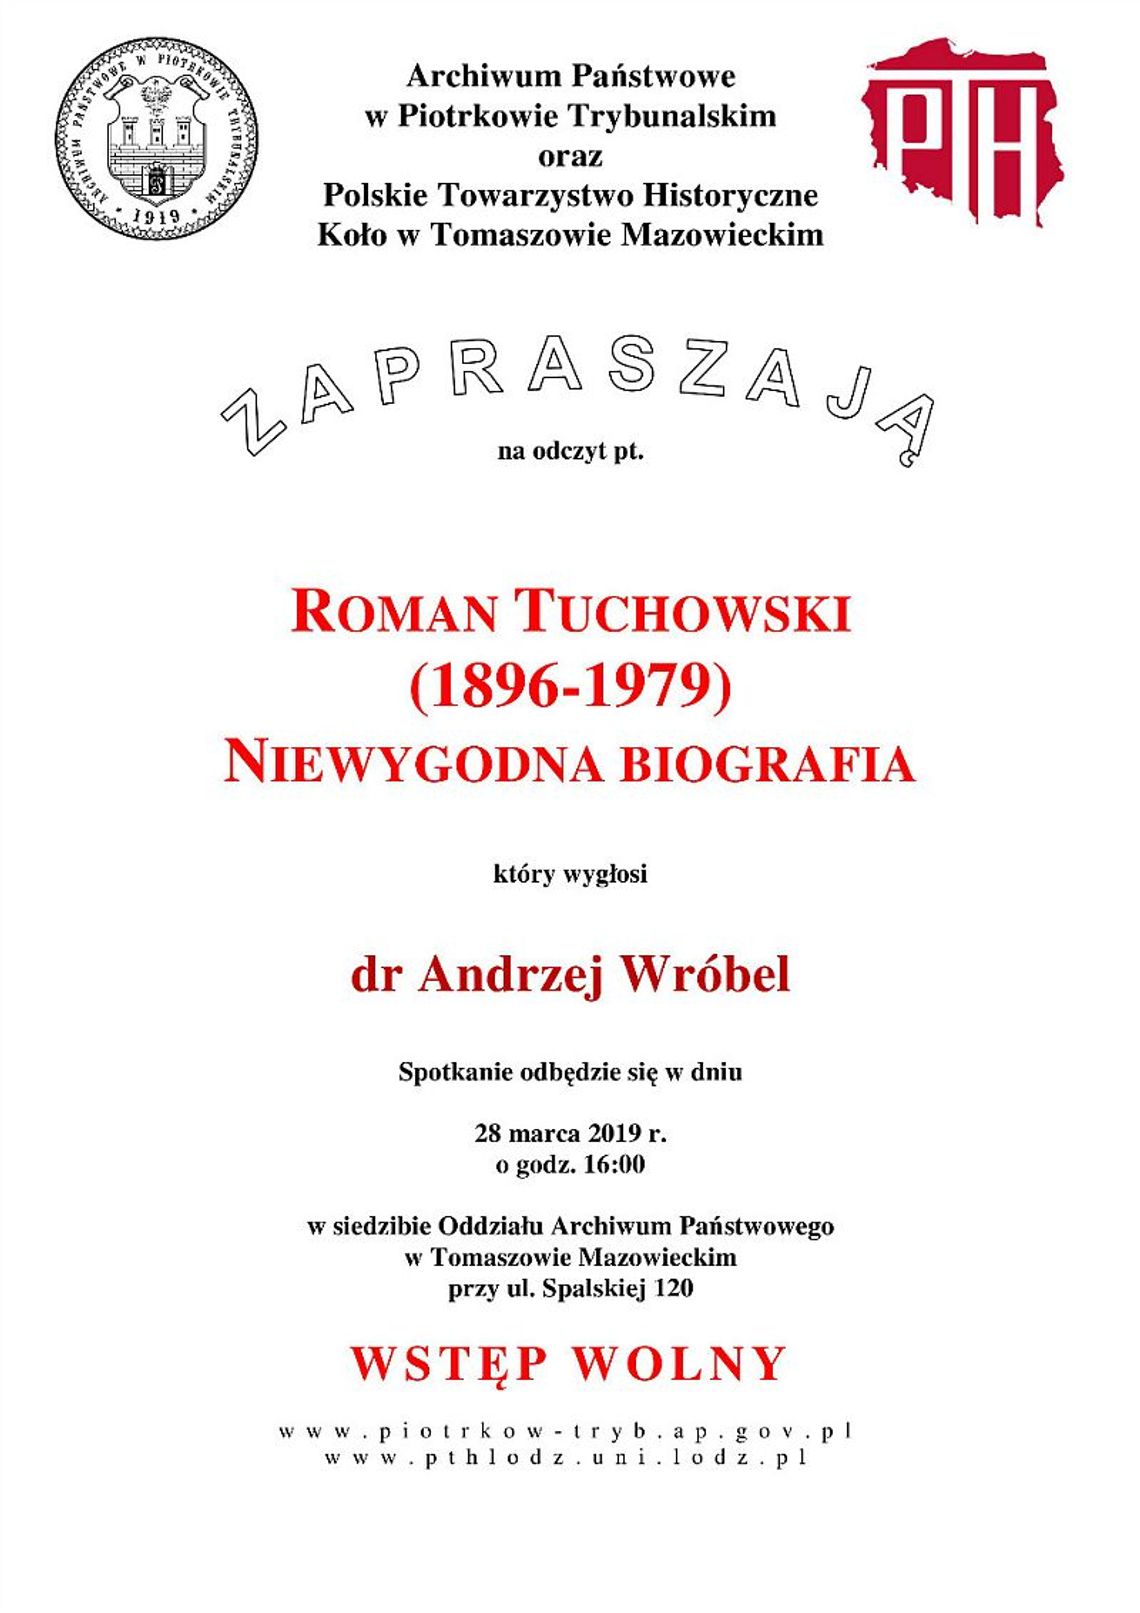 Niewygodna biografia Tuchowskiego - odczyt w Archiwum Panstwowym